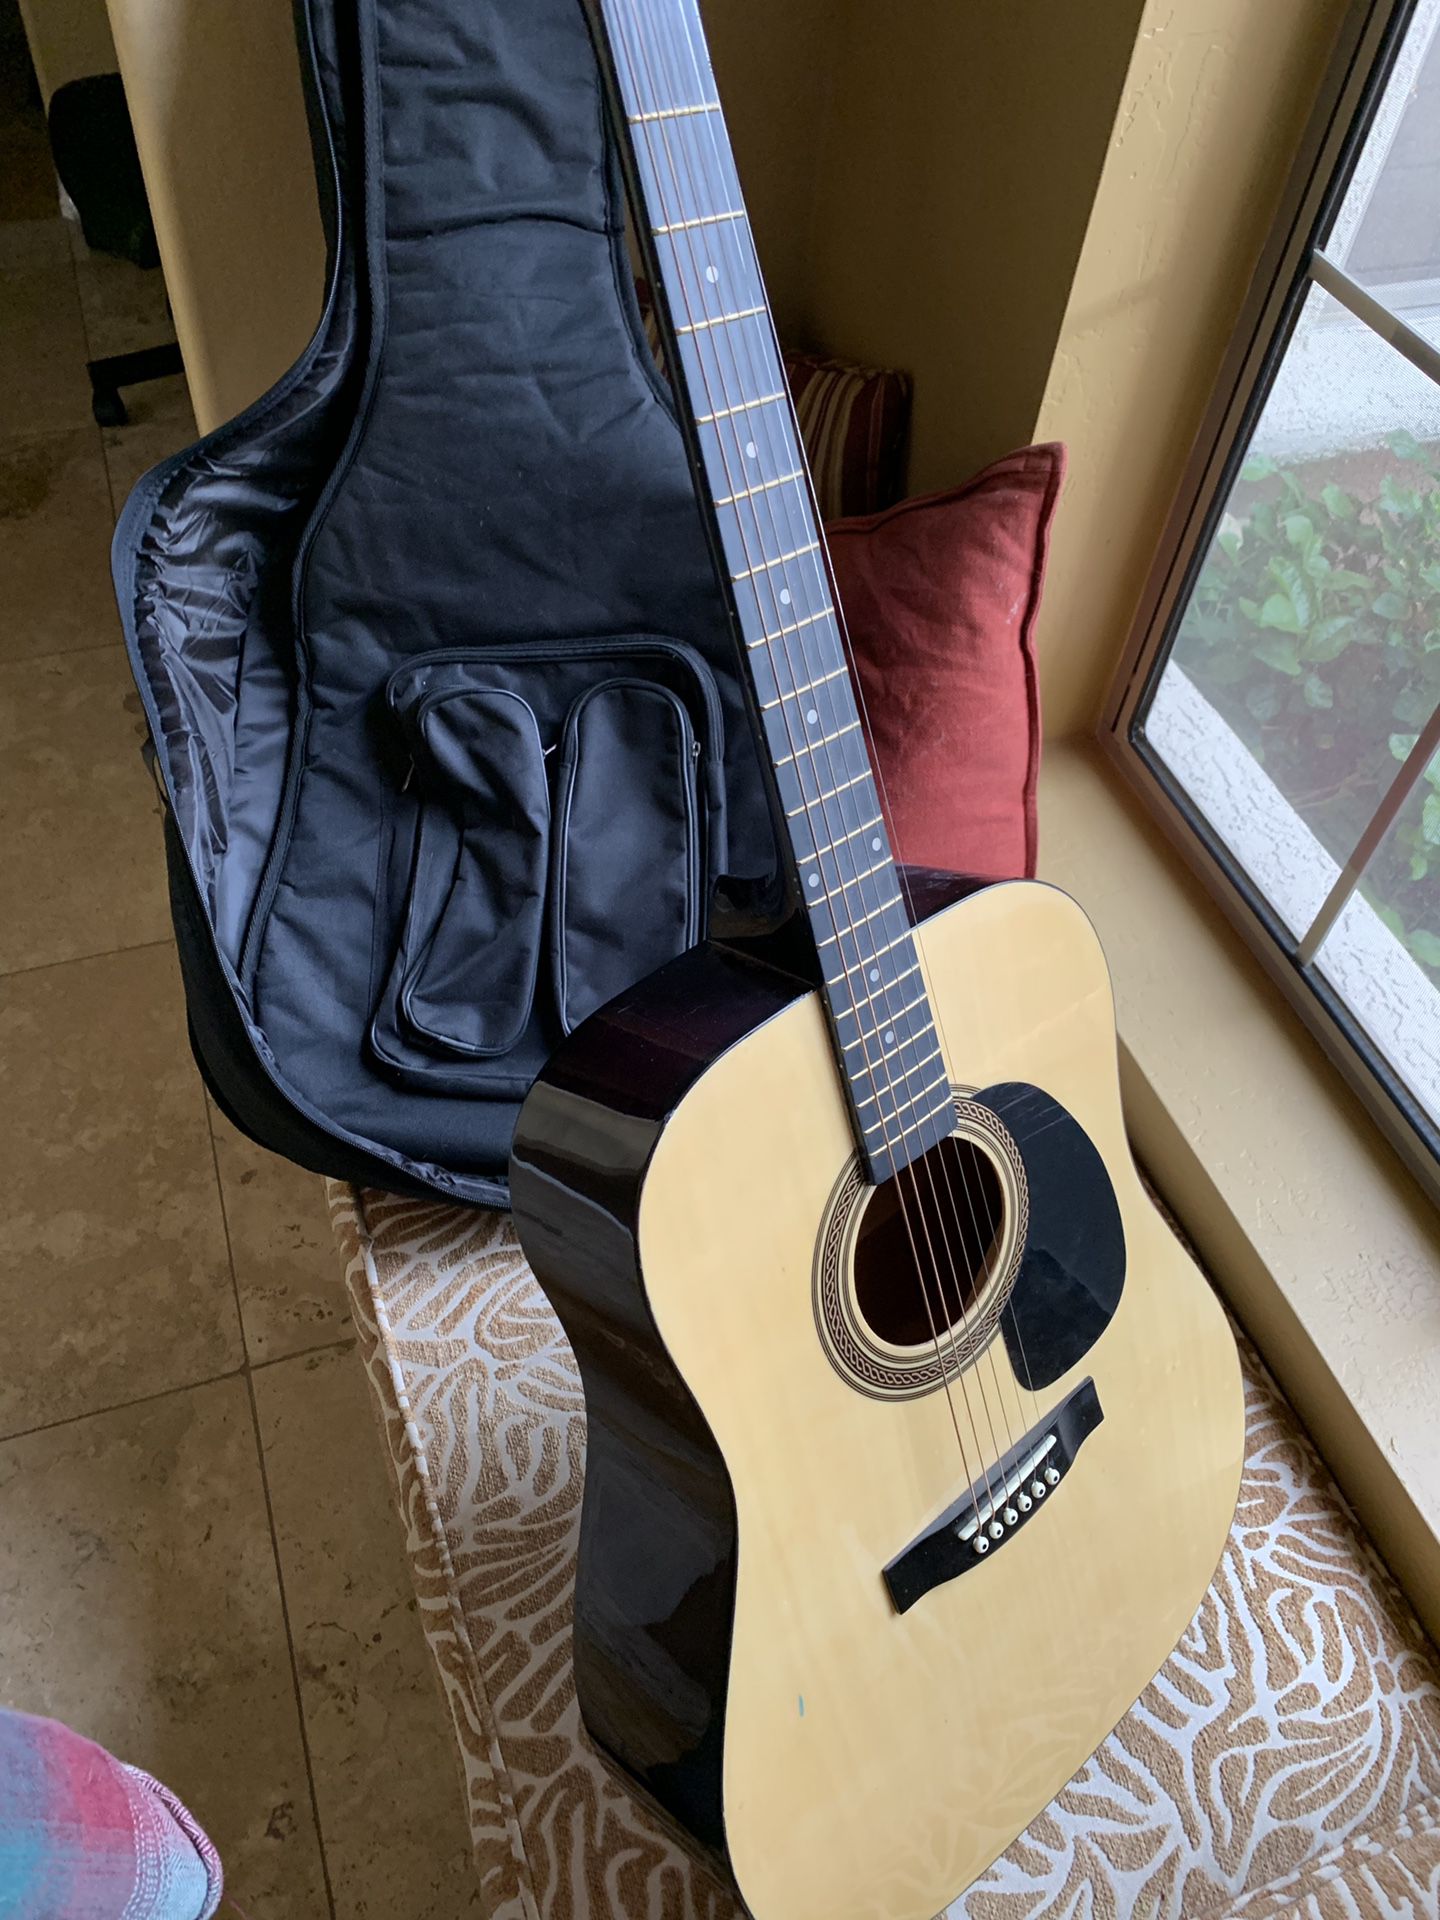 Johnson ジョンソン JG-610-N 610 Player Series Acoustic Guitar, Natural  アコースティックギター アコ